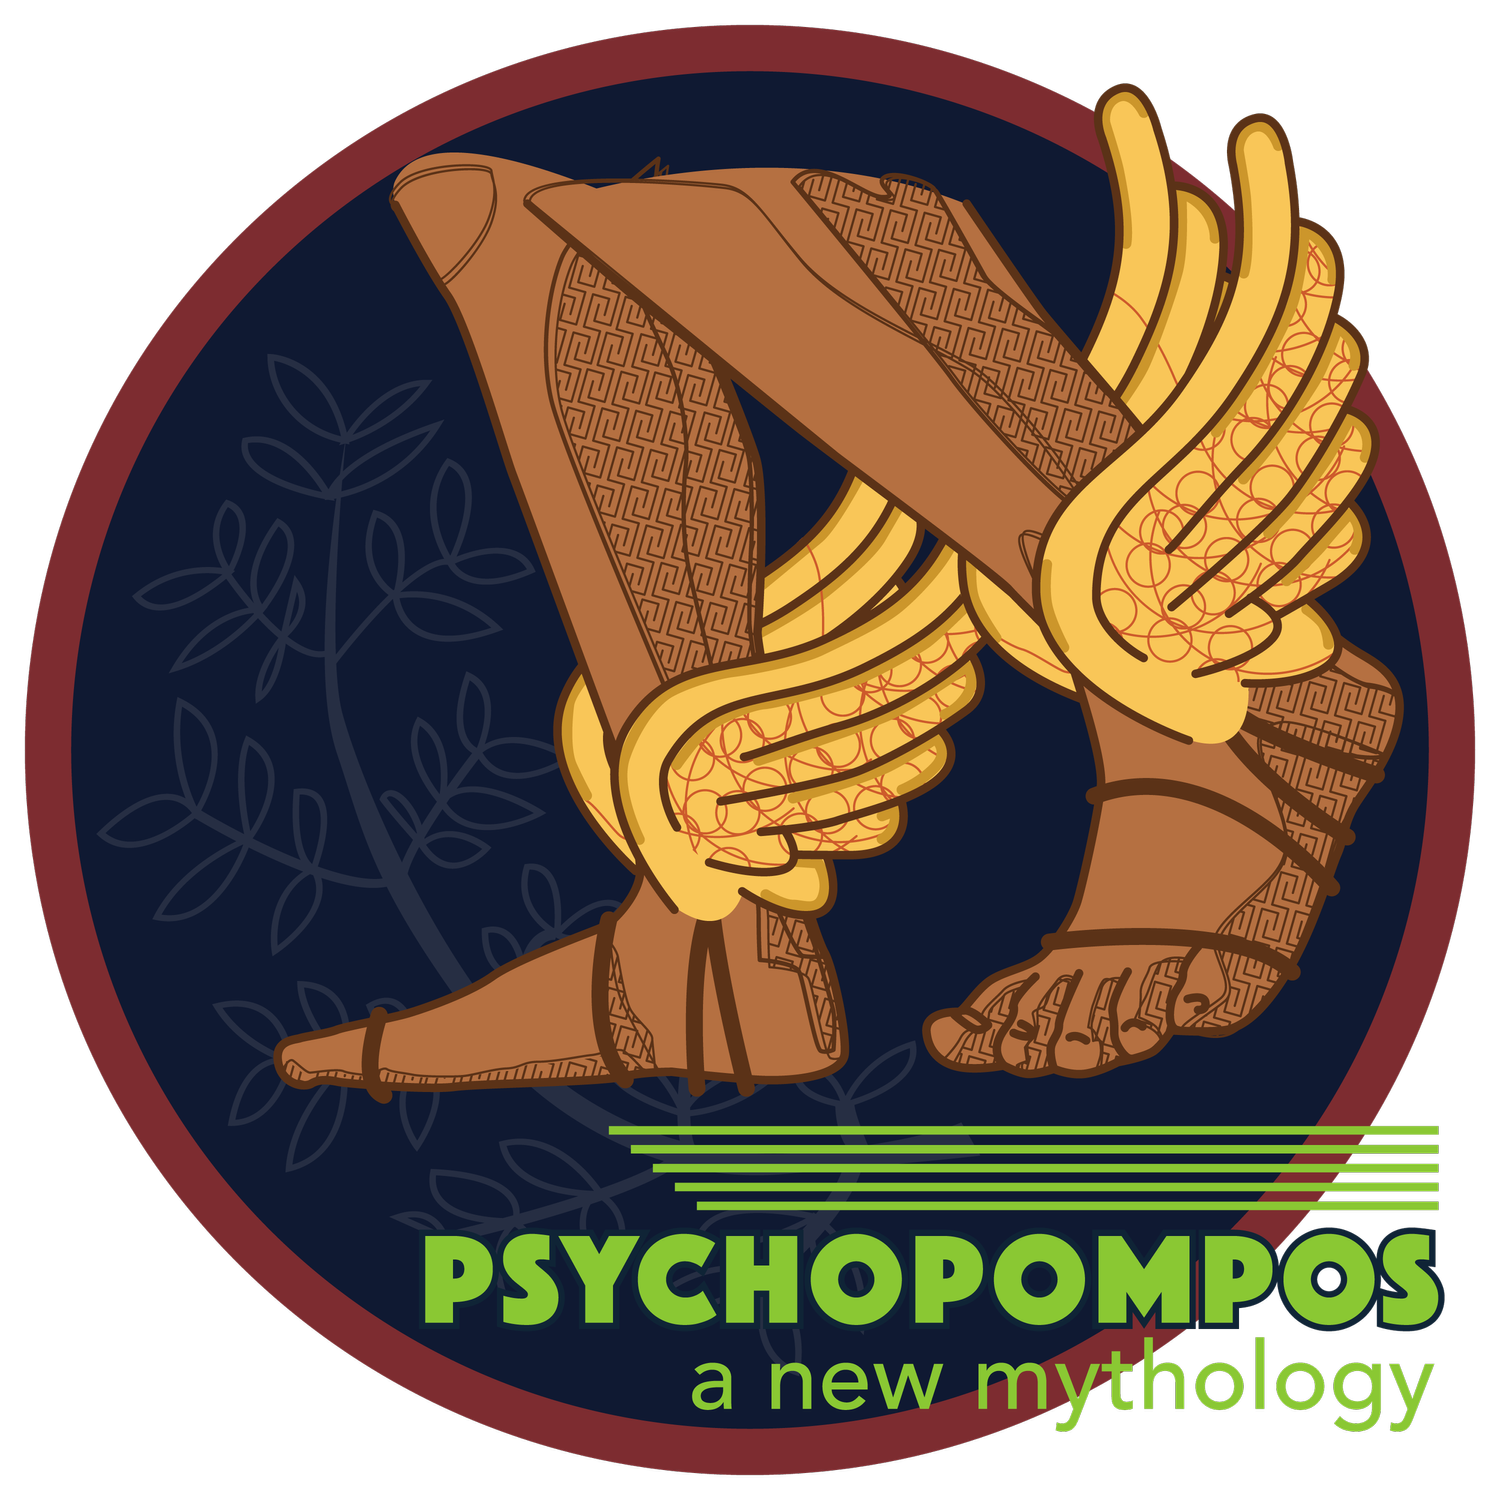 Psychopompos - a new mythology